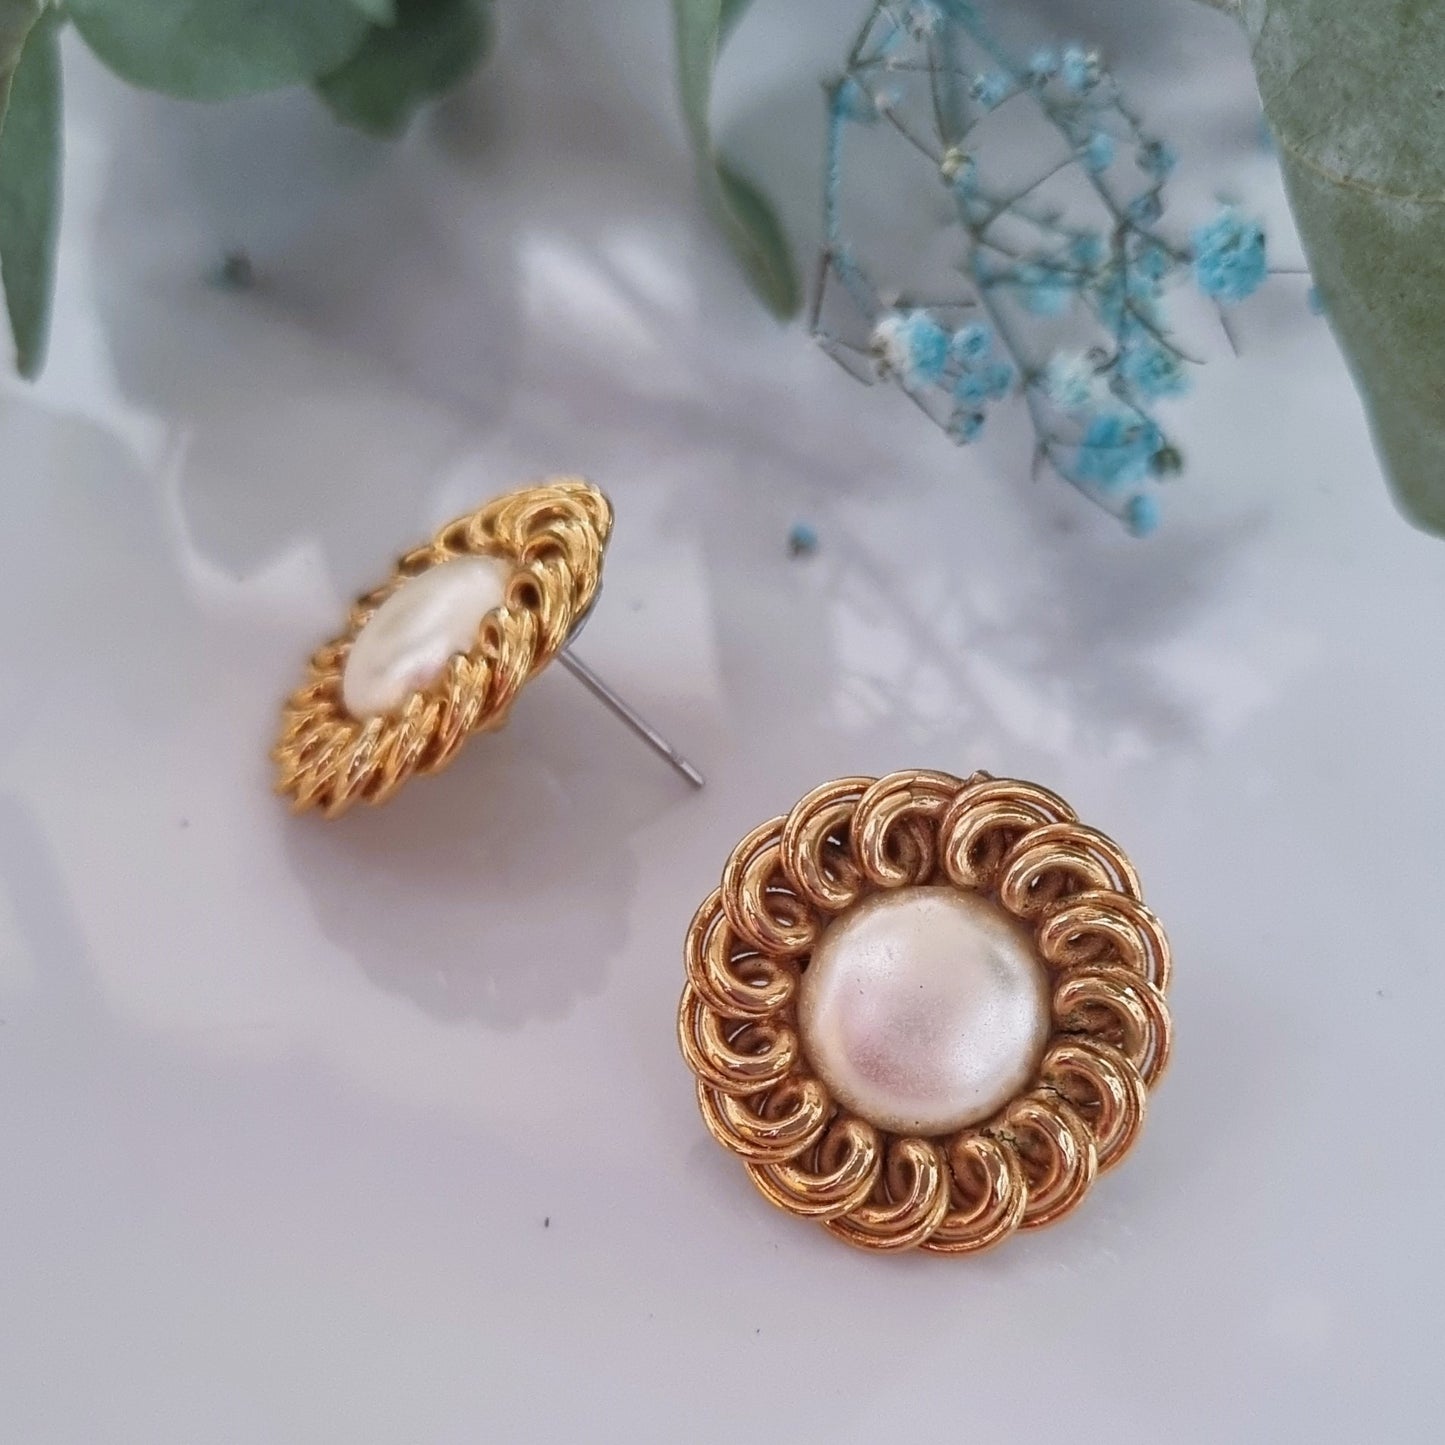 Vintage earrings - Gold/white